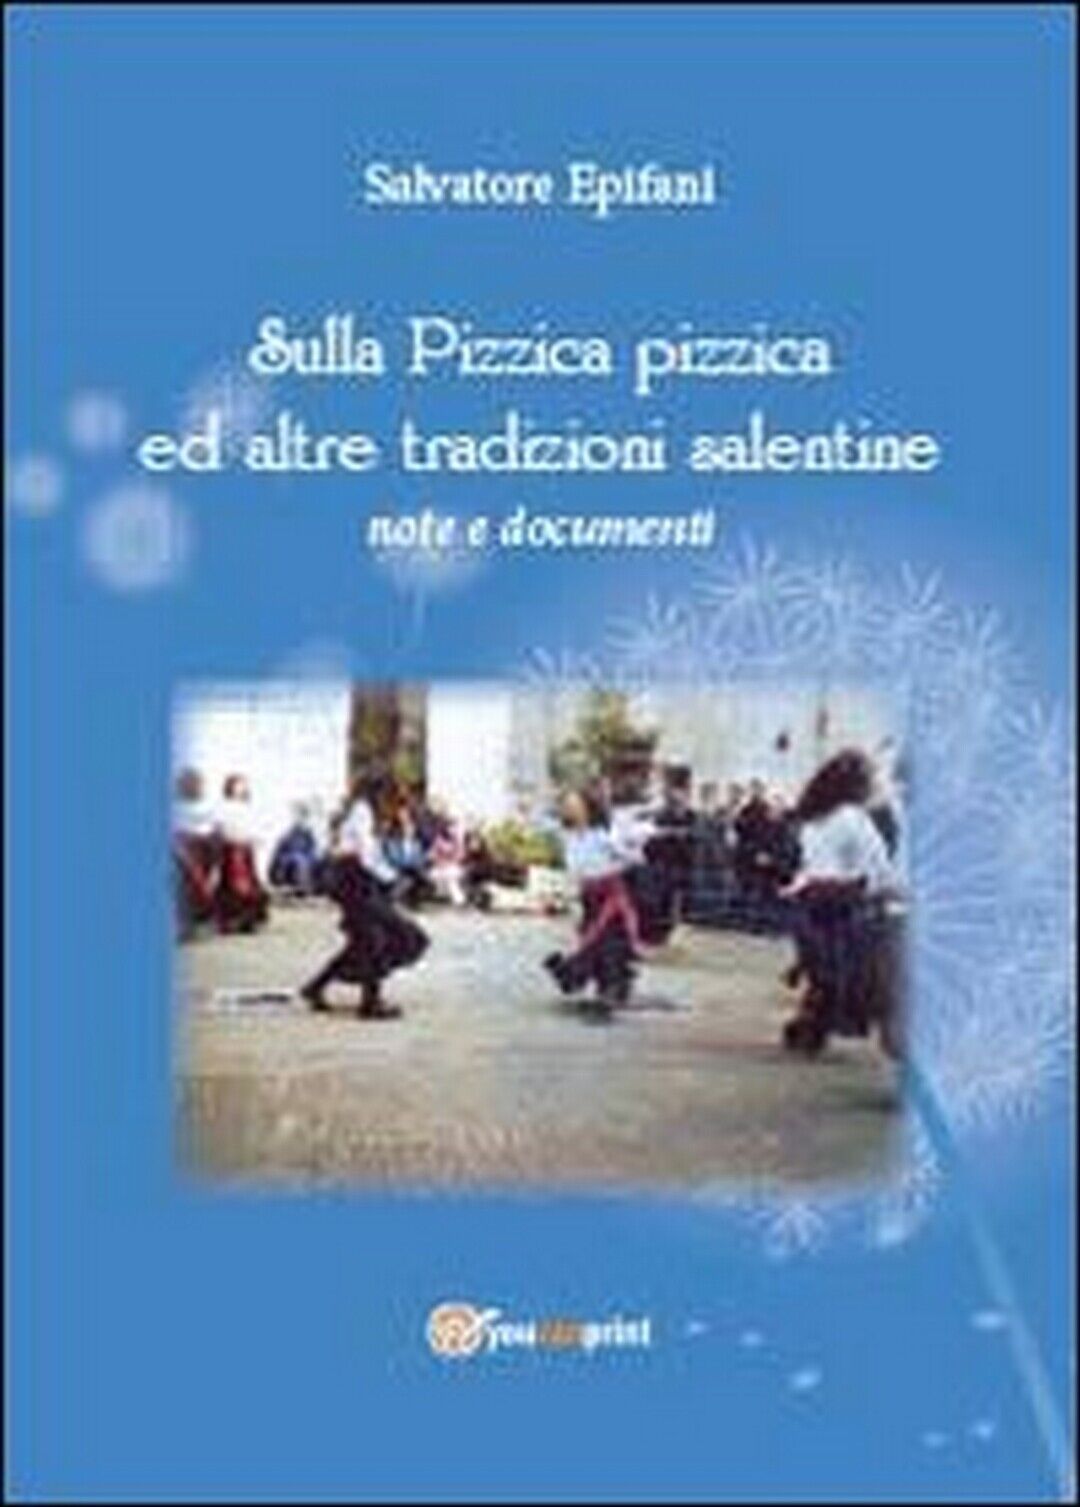 Sulla pizzica pizzica ed altre tradizioni salentine  di Salvatore Epifani,  2013